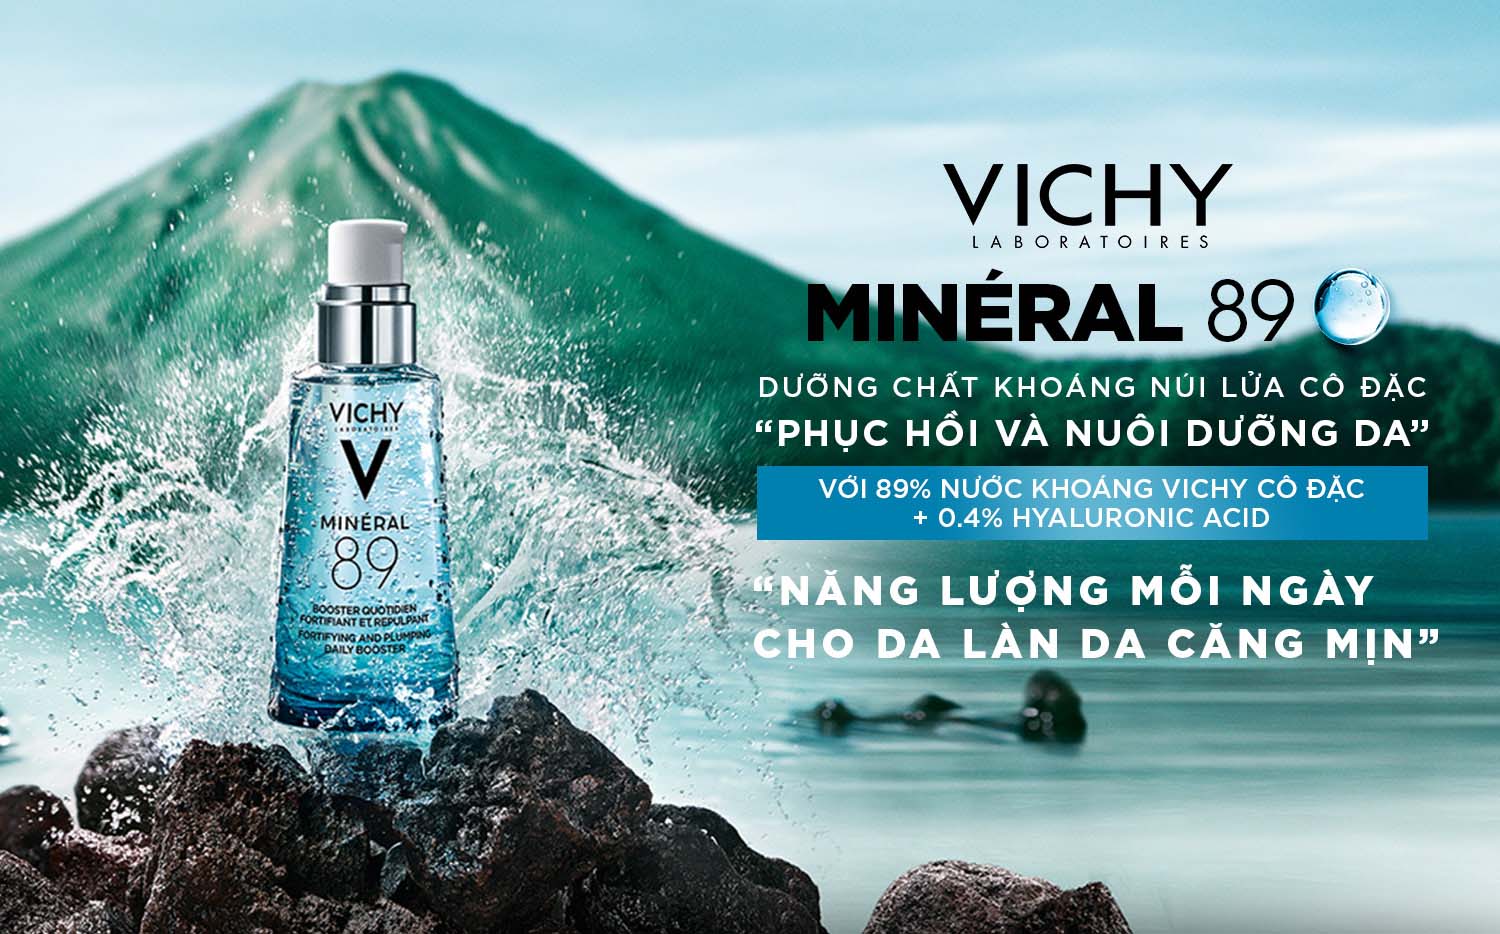 Vichy Mineral 89 Serum chứa 89% nước khoáng Vichy cô đặc + 0.4% Hyaluronic Acid